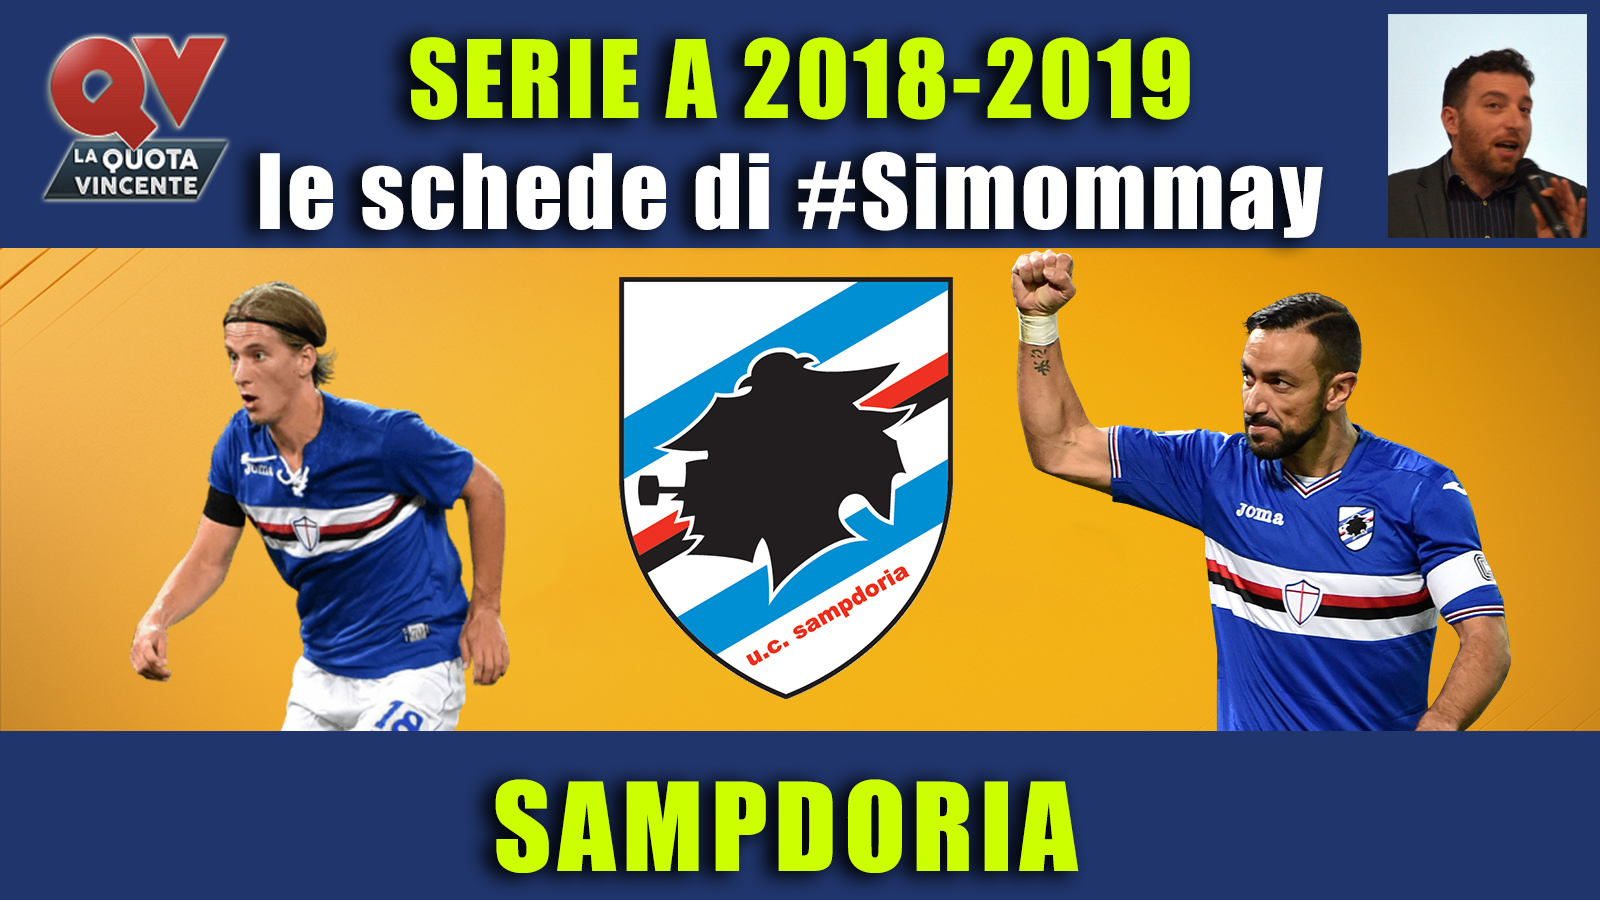 Guida Serie A 2018-2019 SAMPDORIA: il terzo anno di Giampaolo